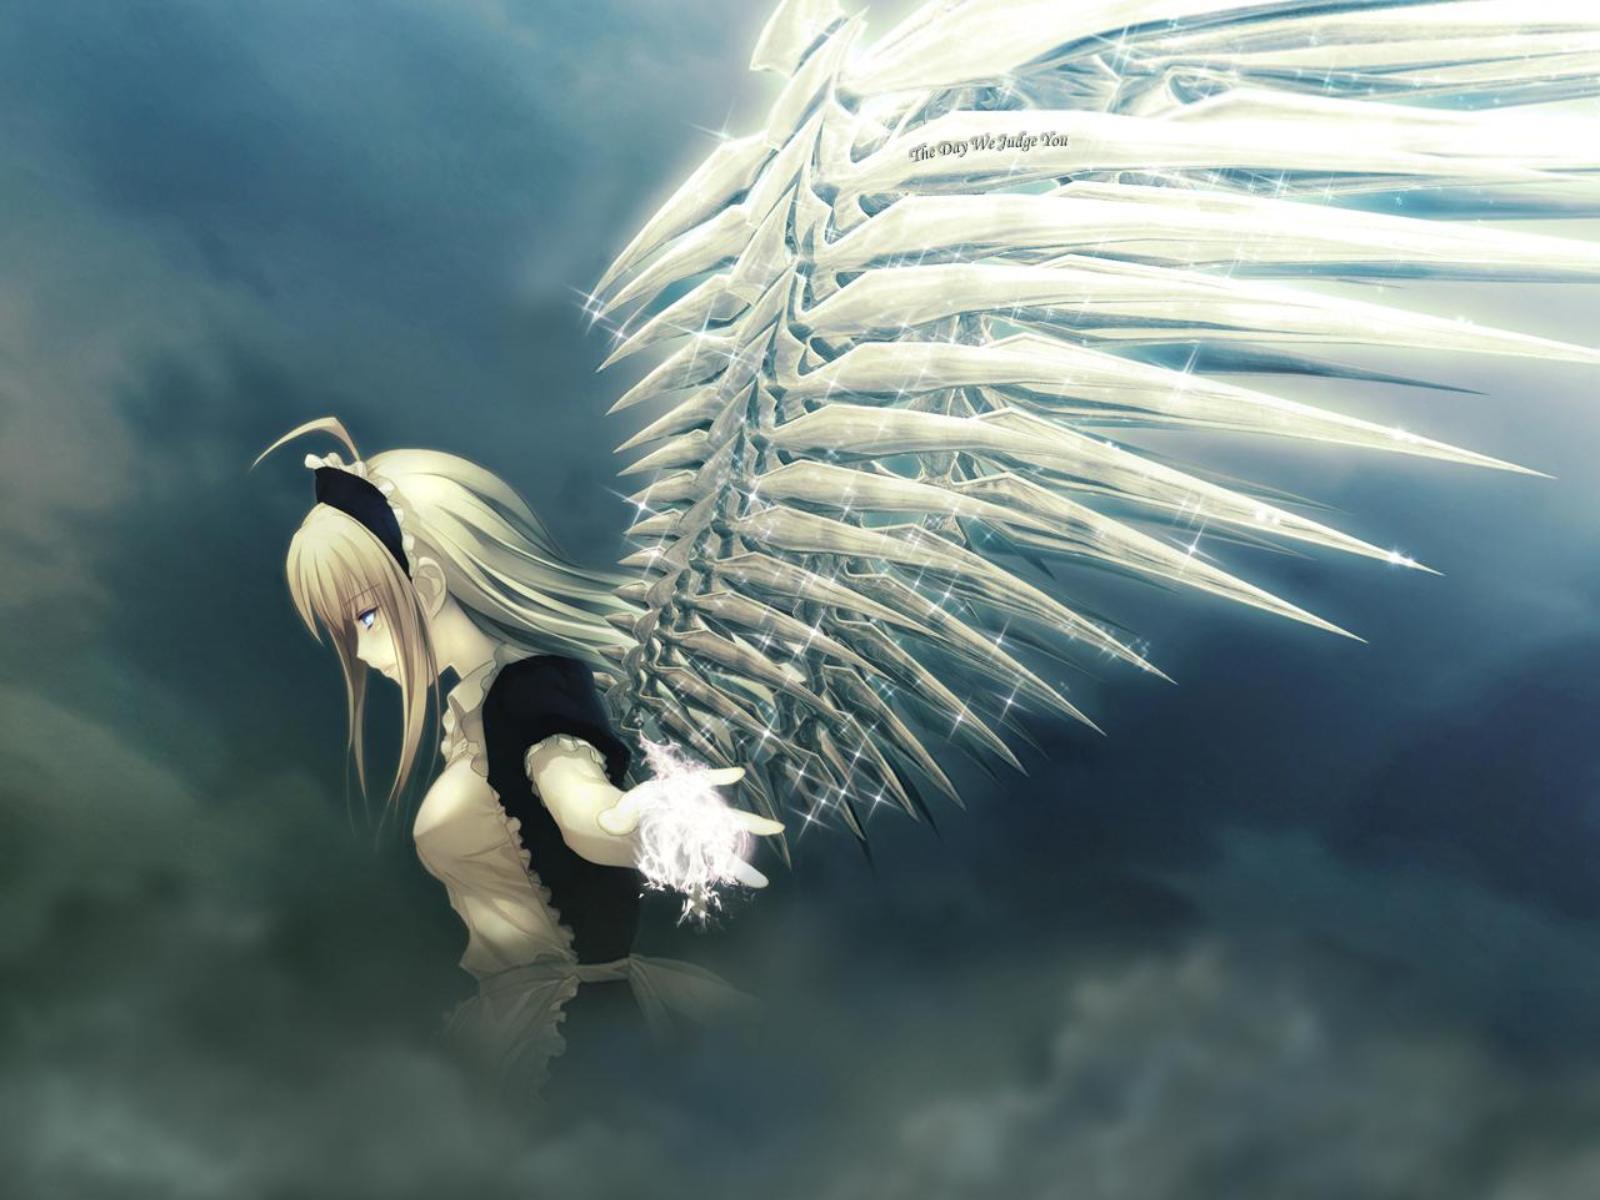 Anime Angel wings HD Image | PixelsTalk.Net